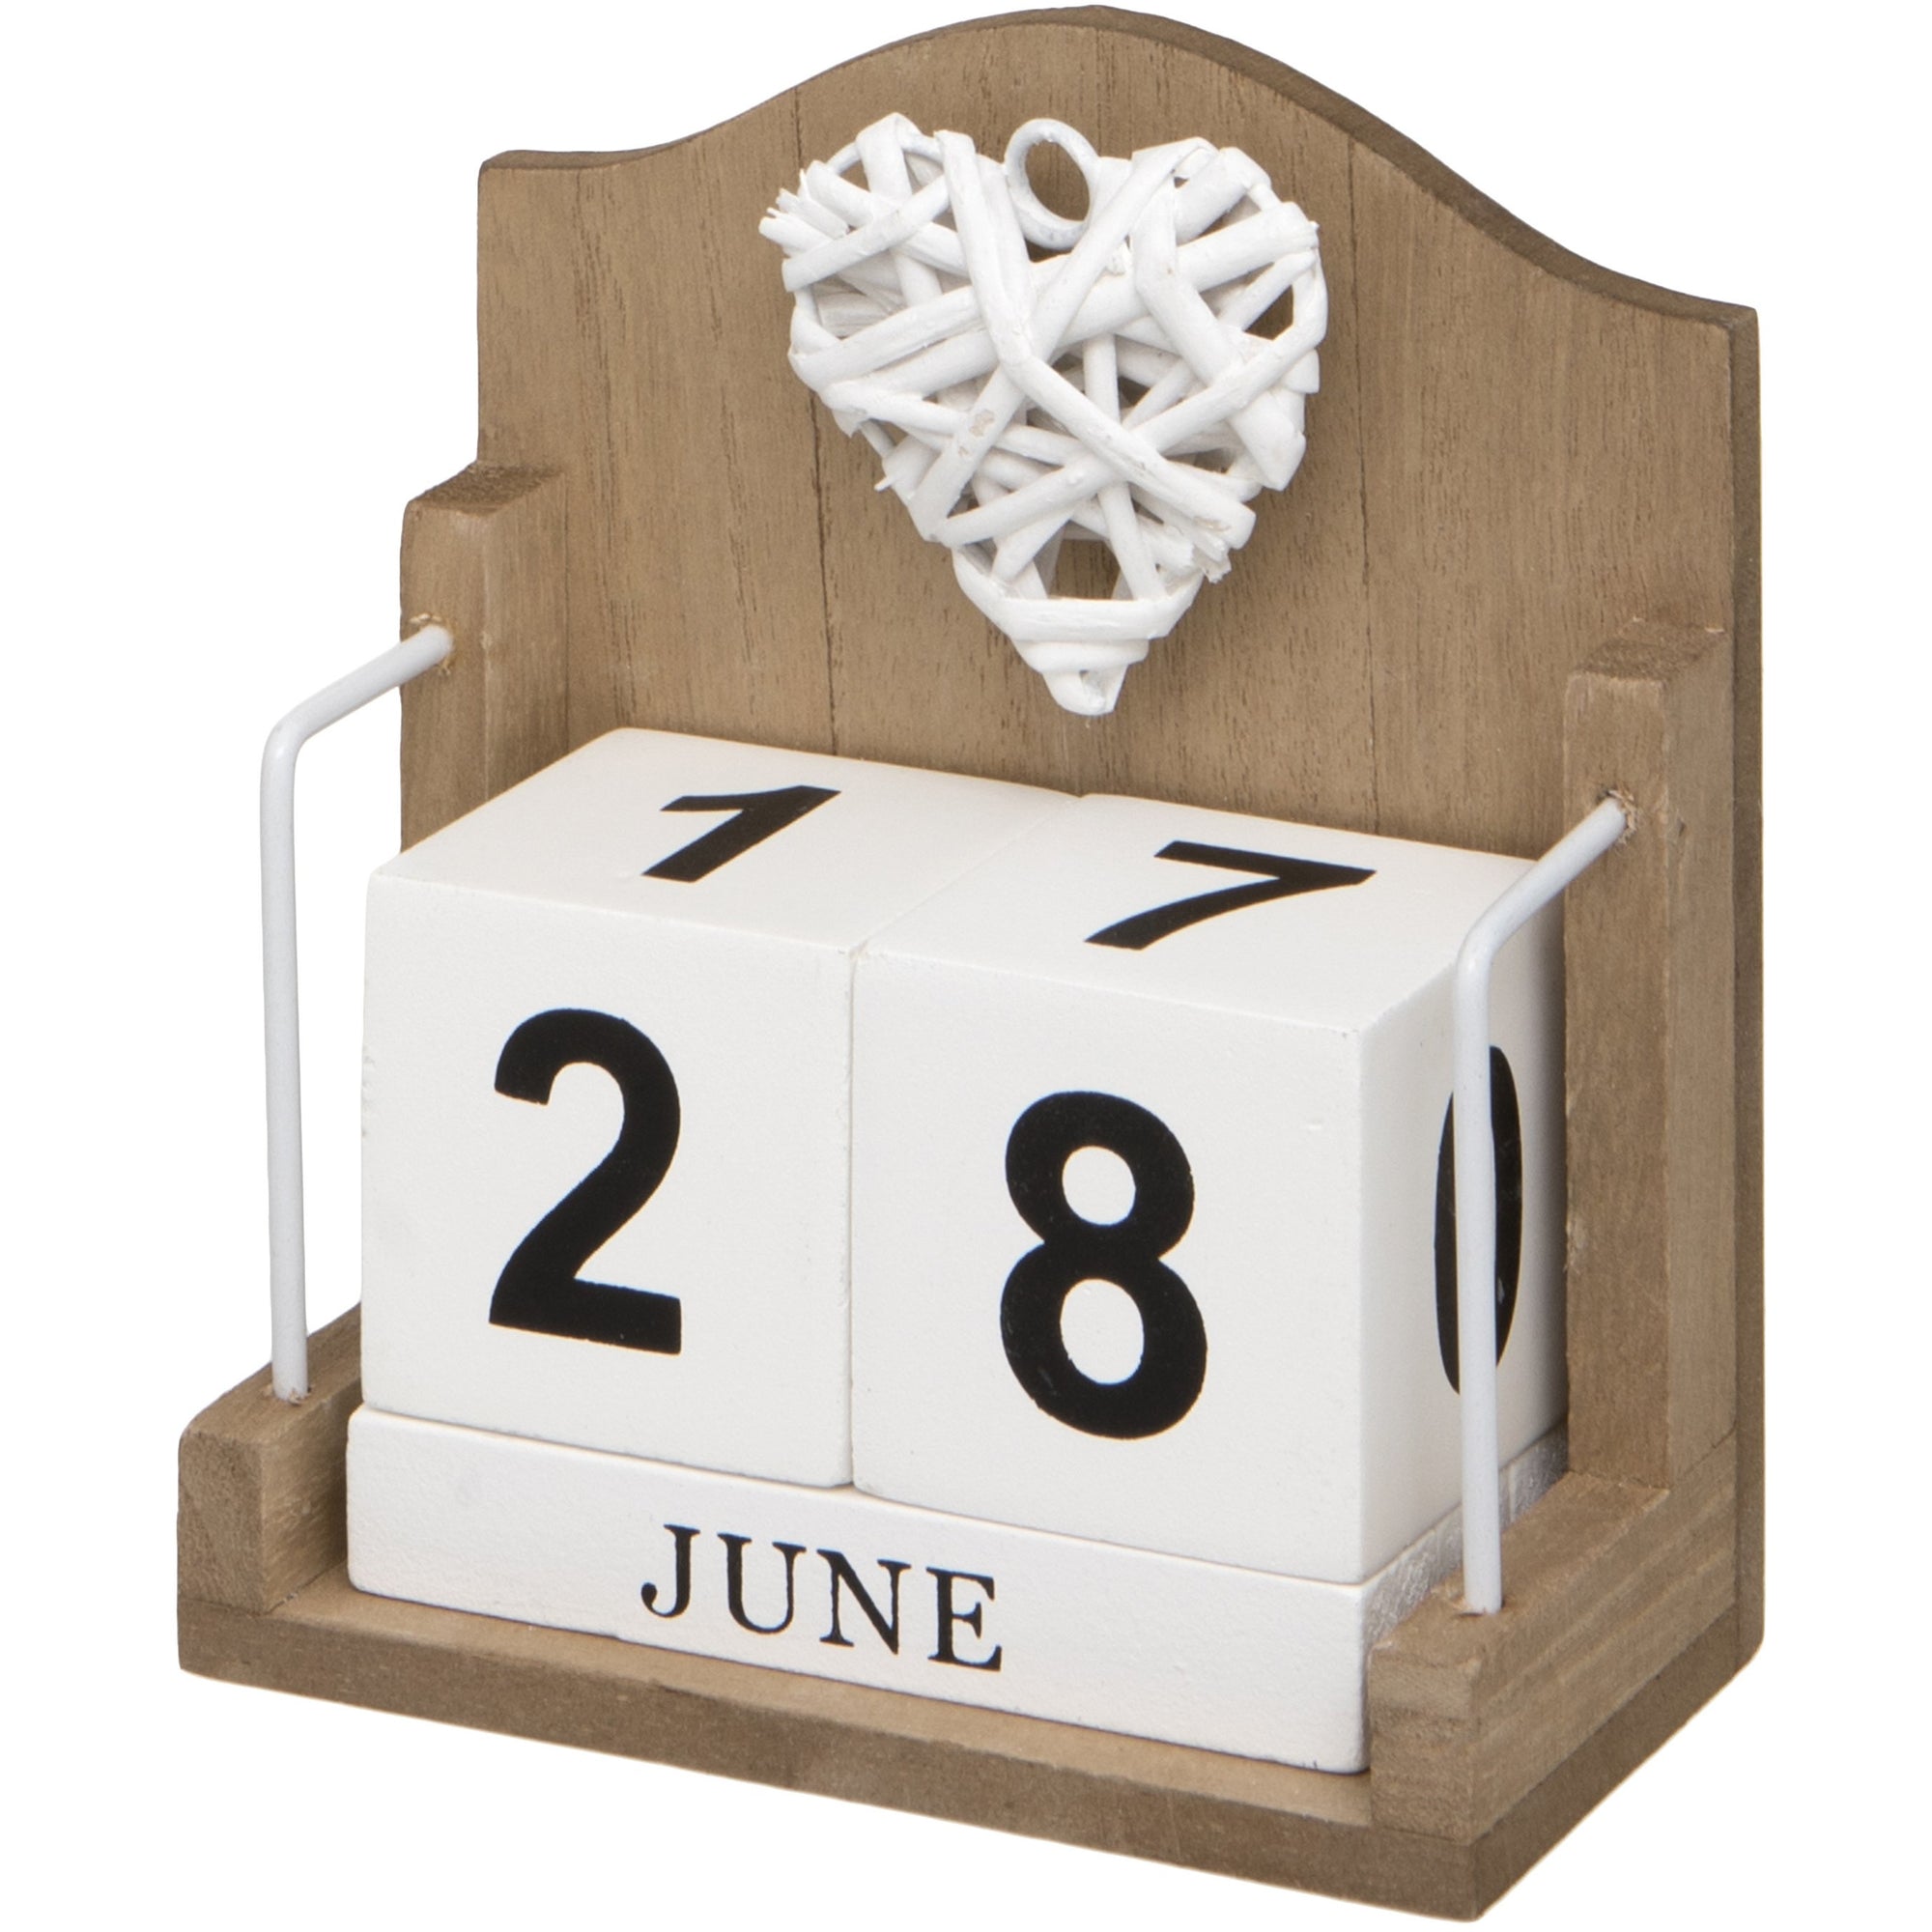 Woven Heart Wooden Perpetual Desk Calendar